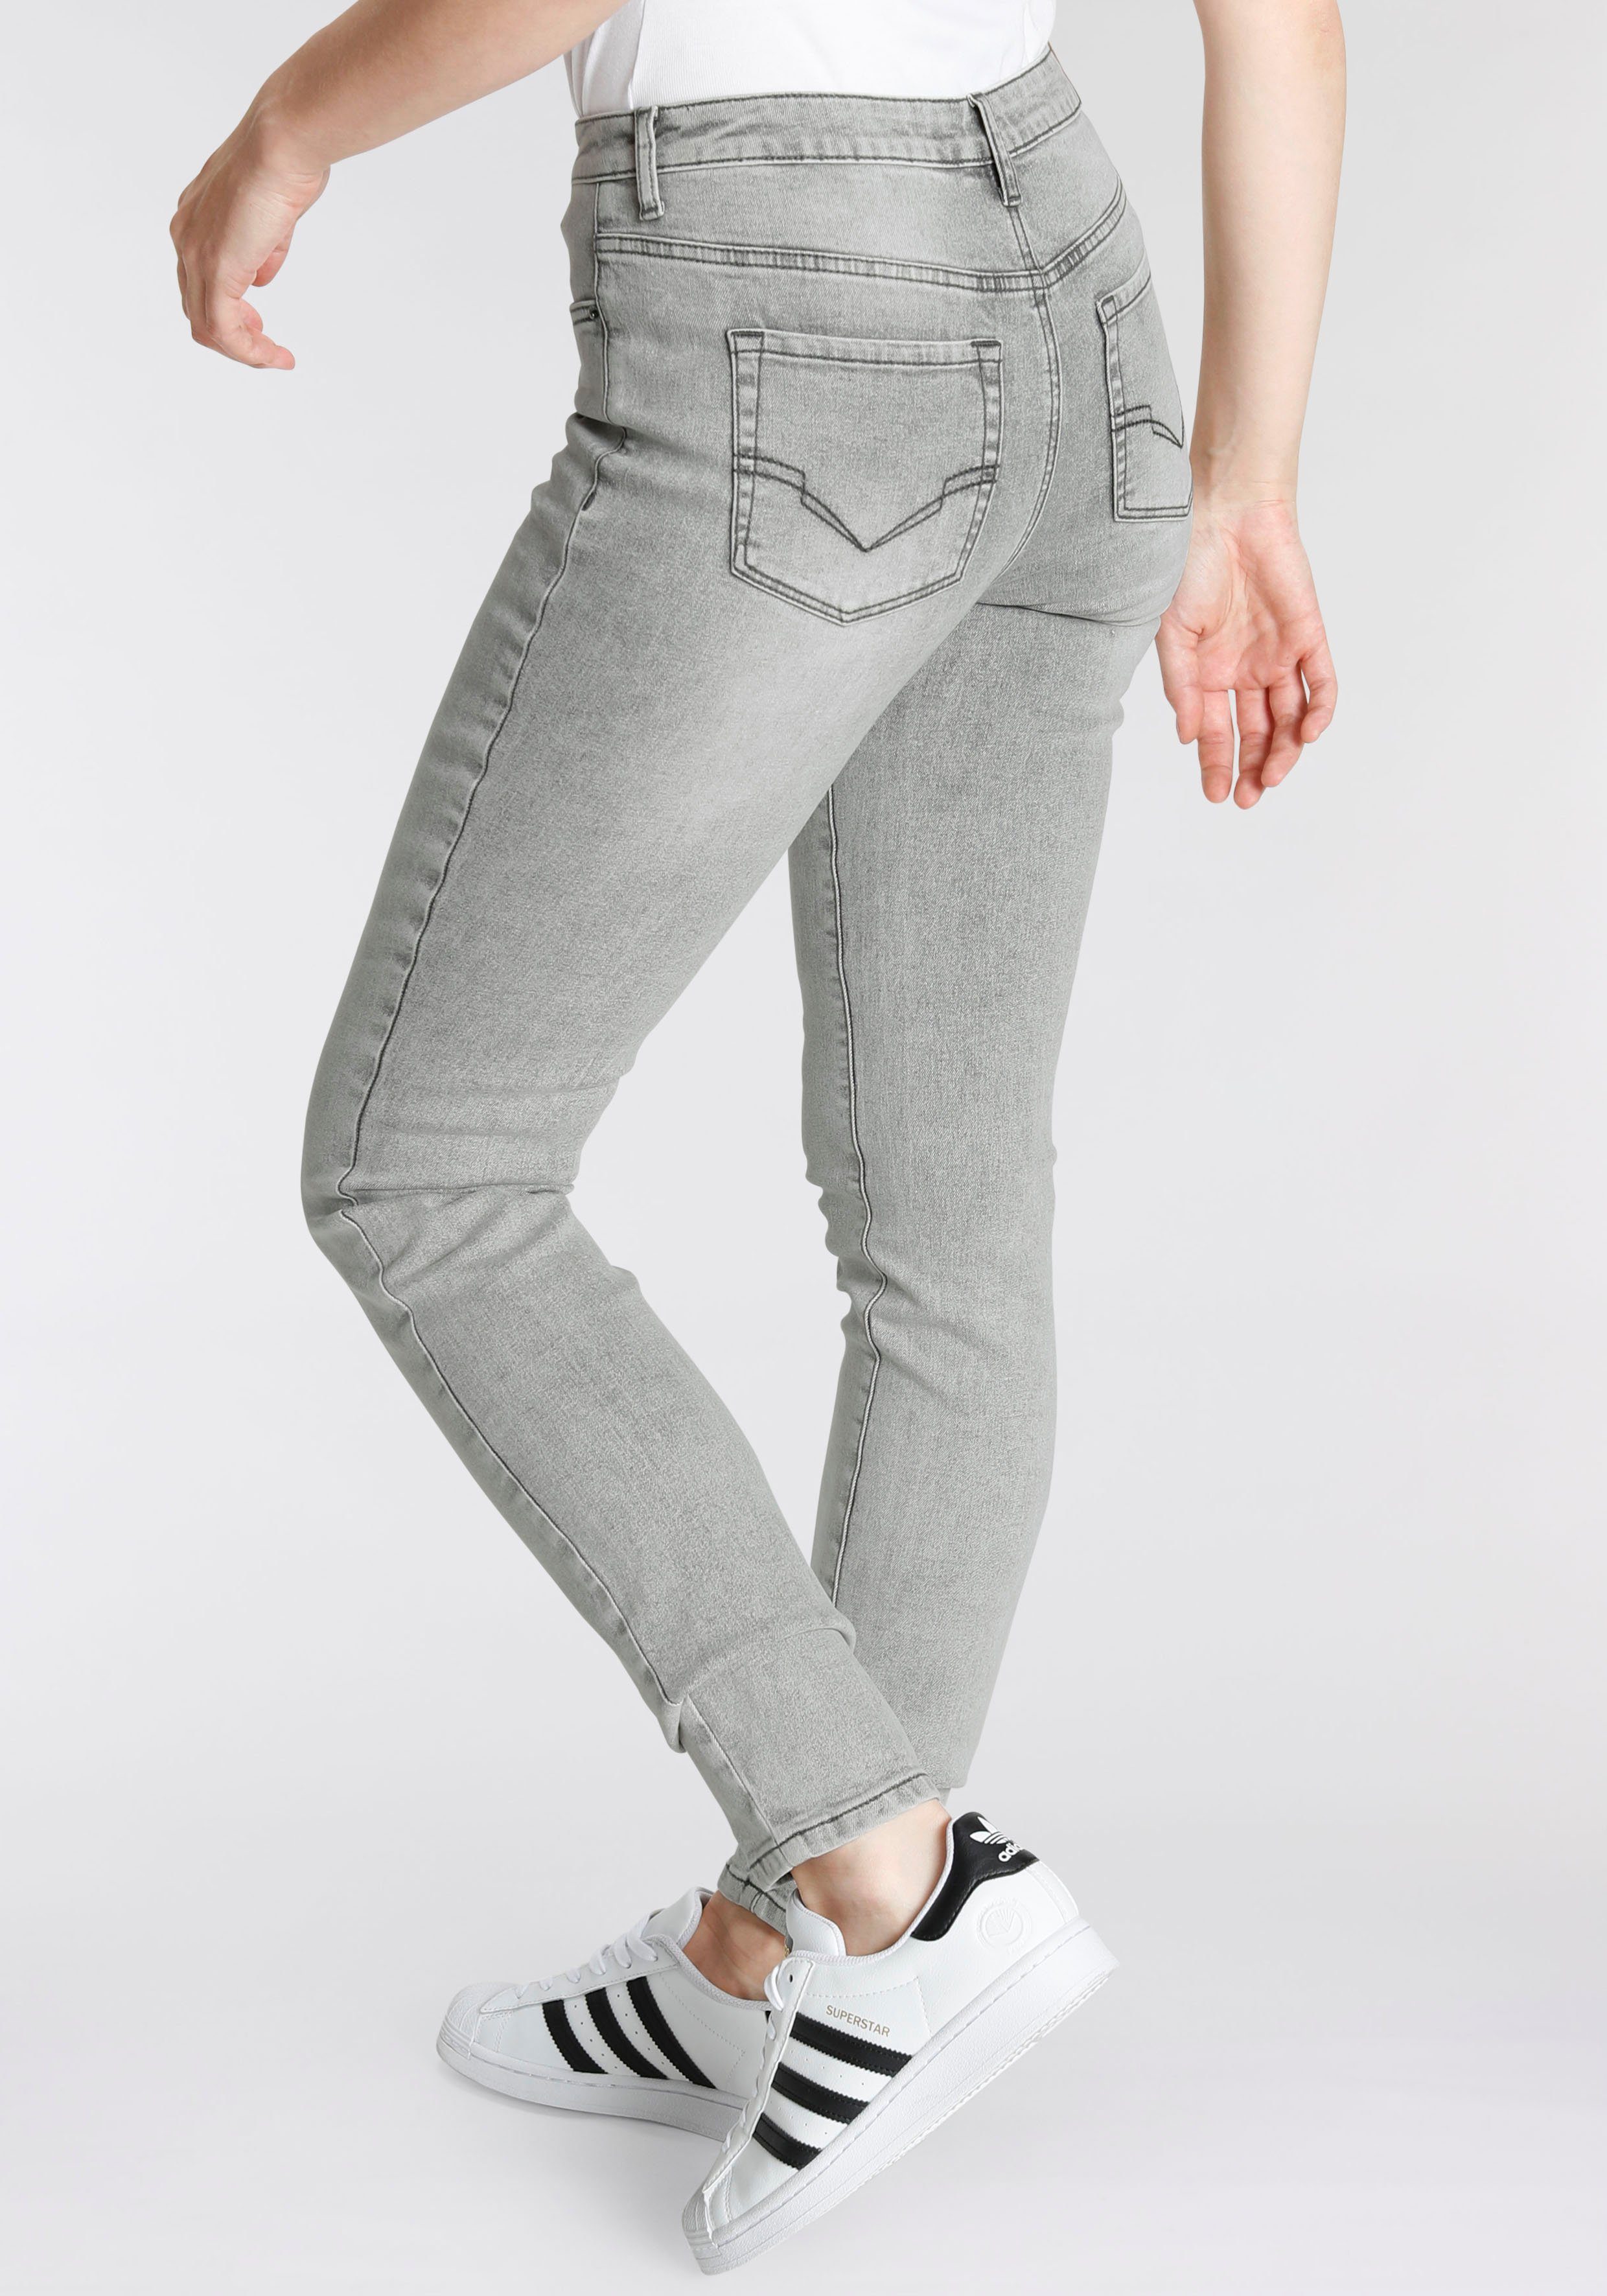 OZON RISE WASH H.I.S Produktion VINTAGE 5-Pocket-Jeans HIGH SLIM durch wassersparende Ökologische,